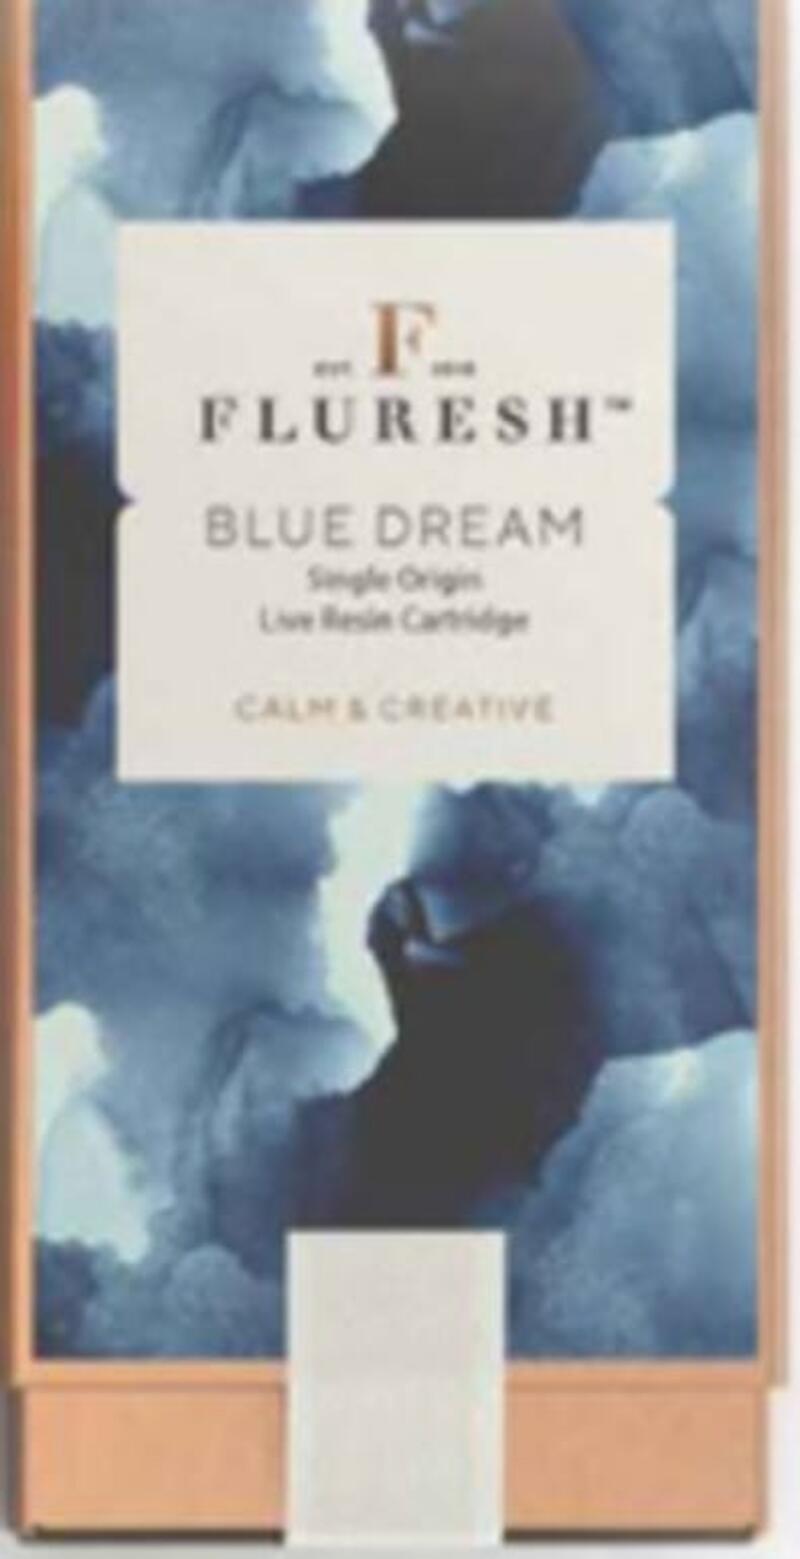 Fluresh: Blue Dream Live Resin Cart